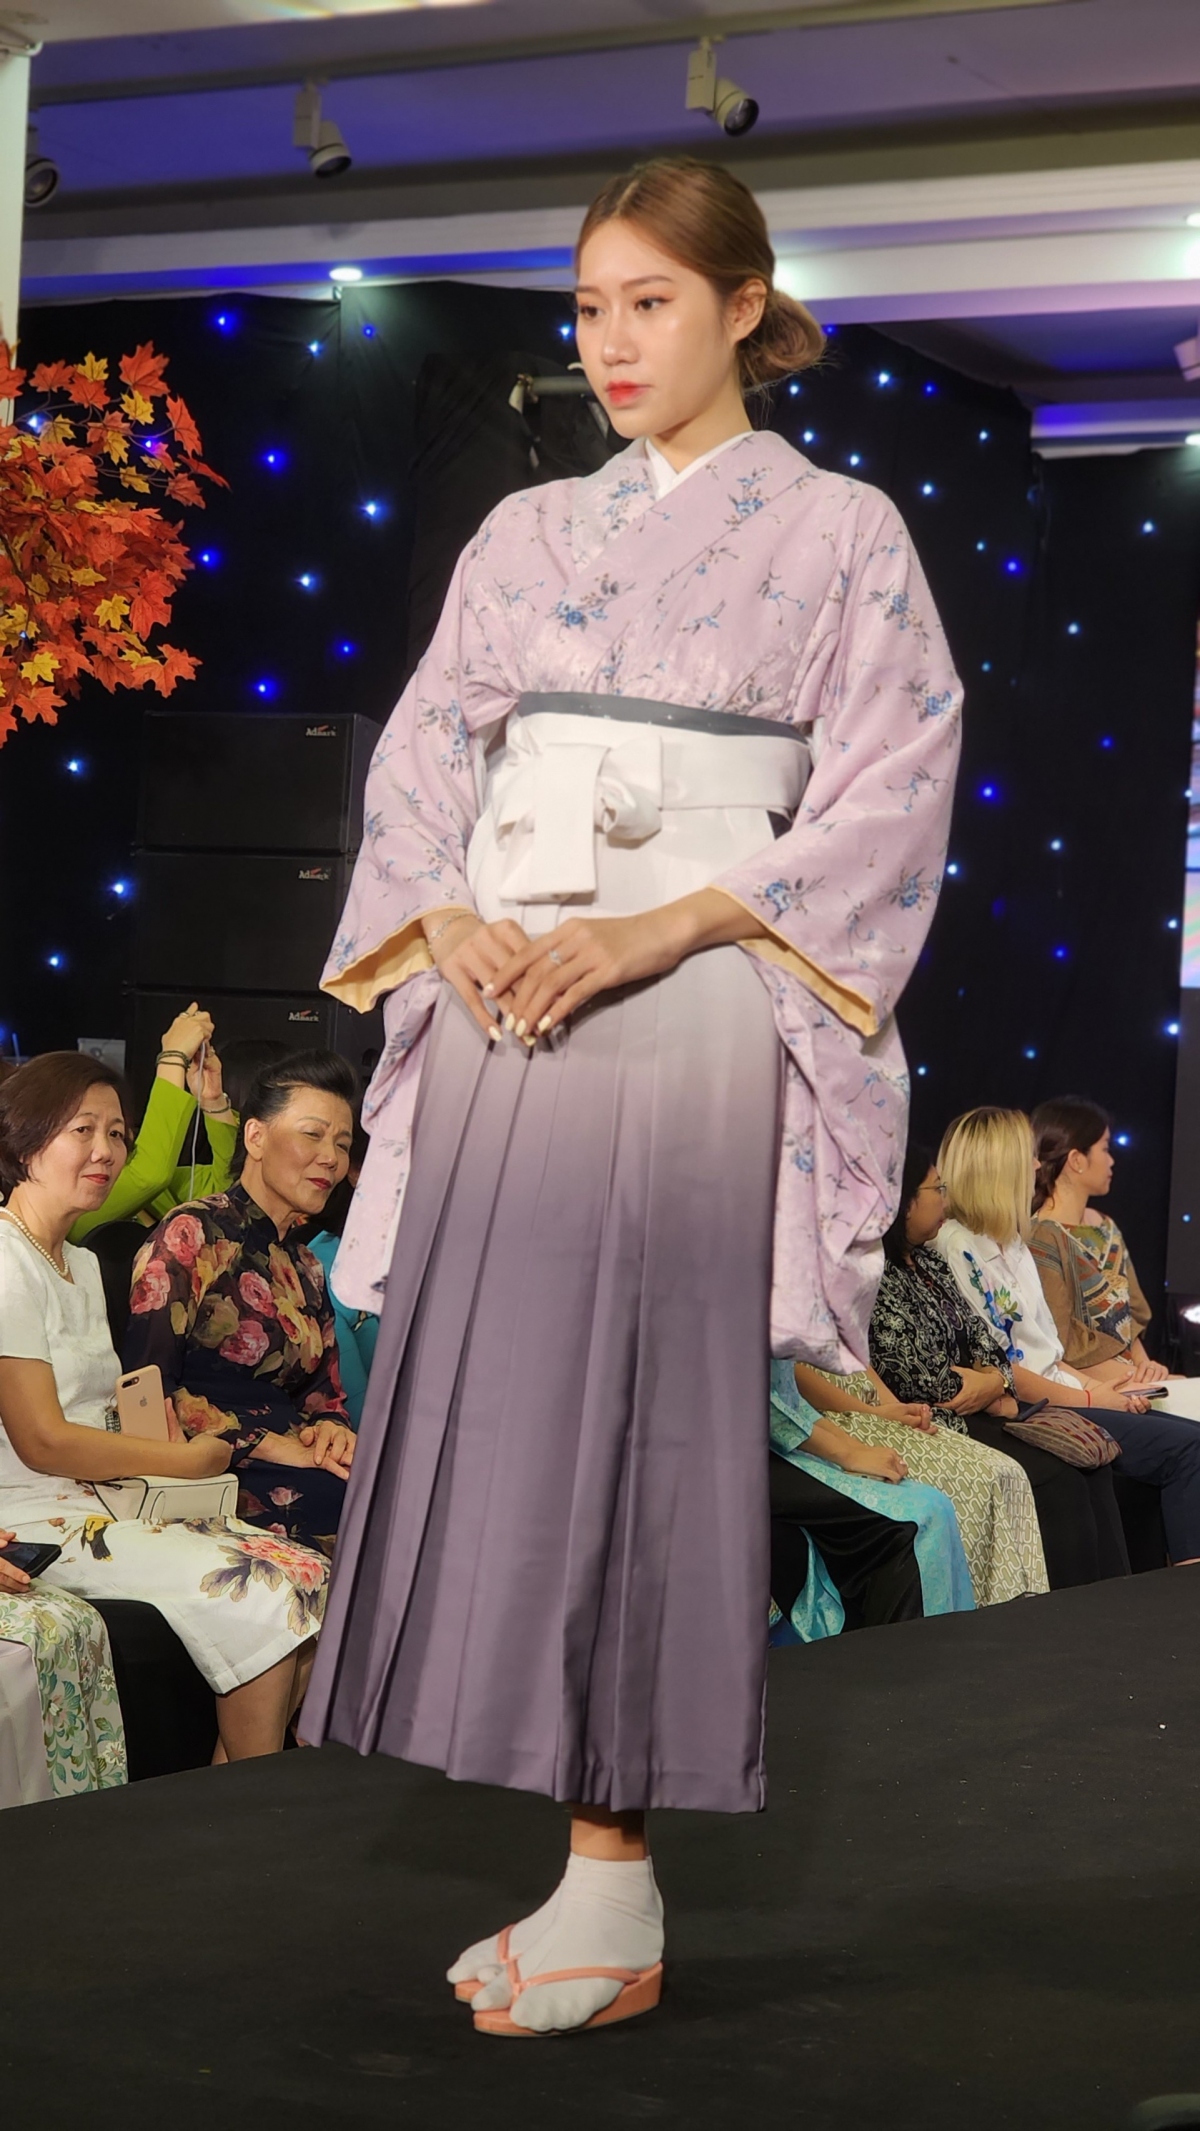 kimono-ao dai fashion show highlights vietnam-japan friendship picture 7